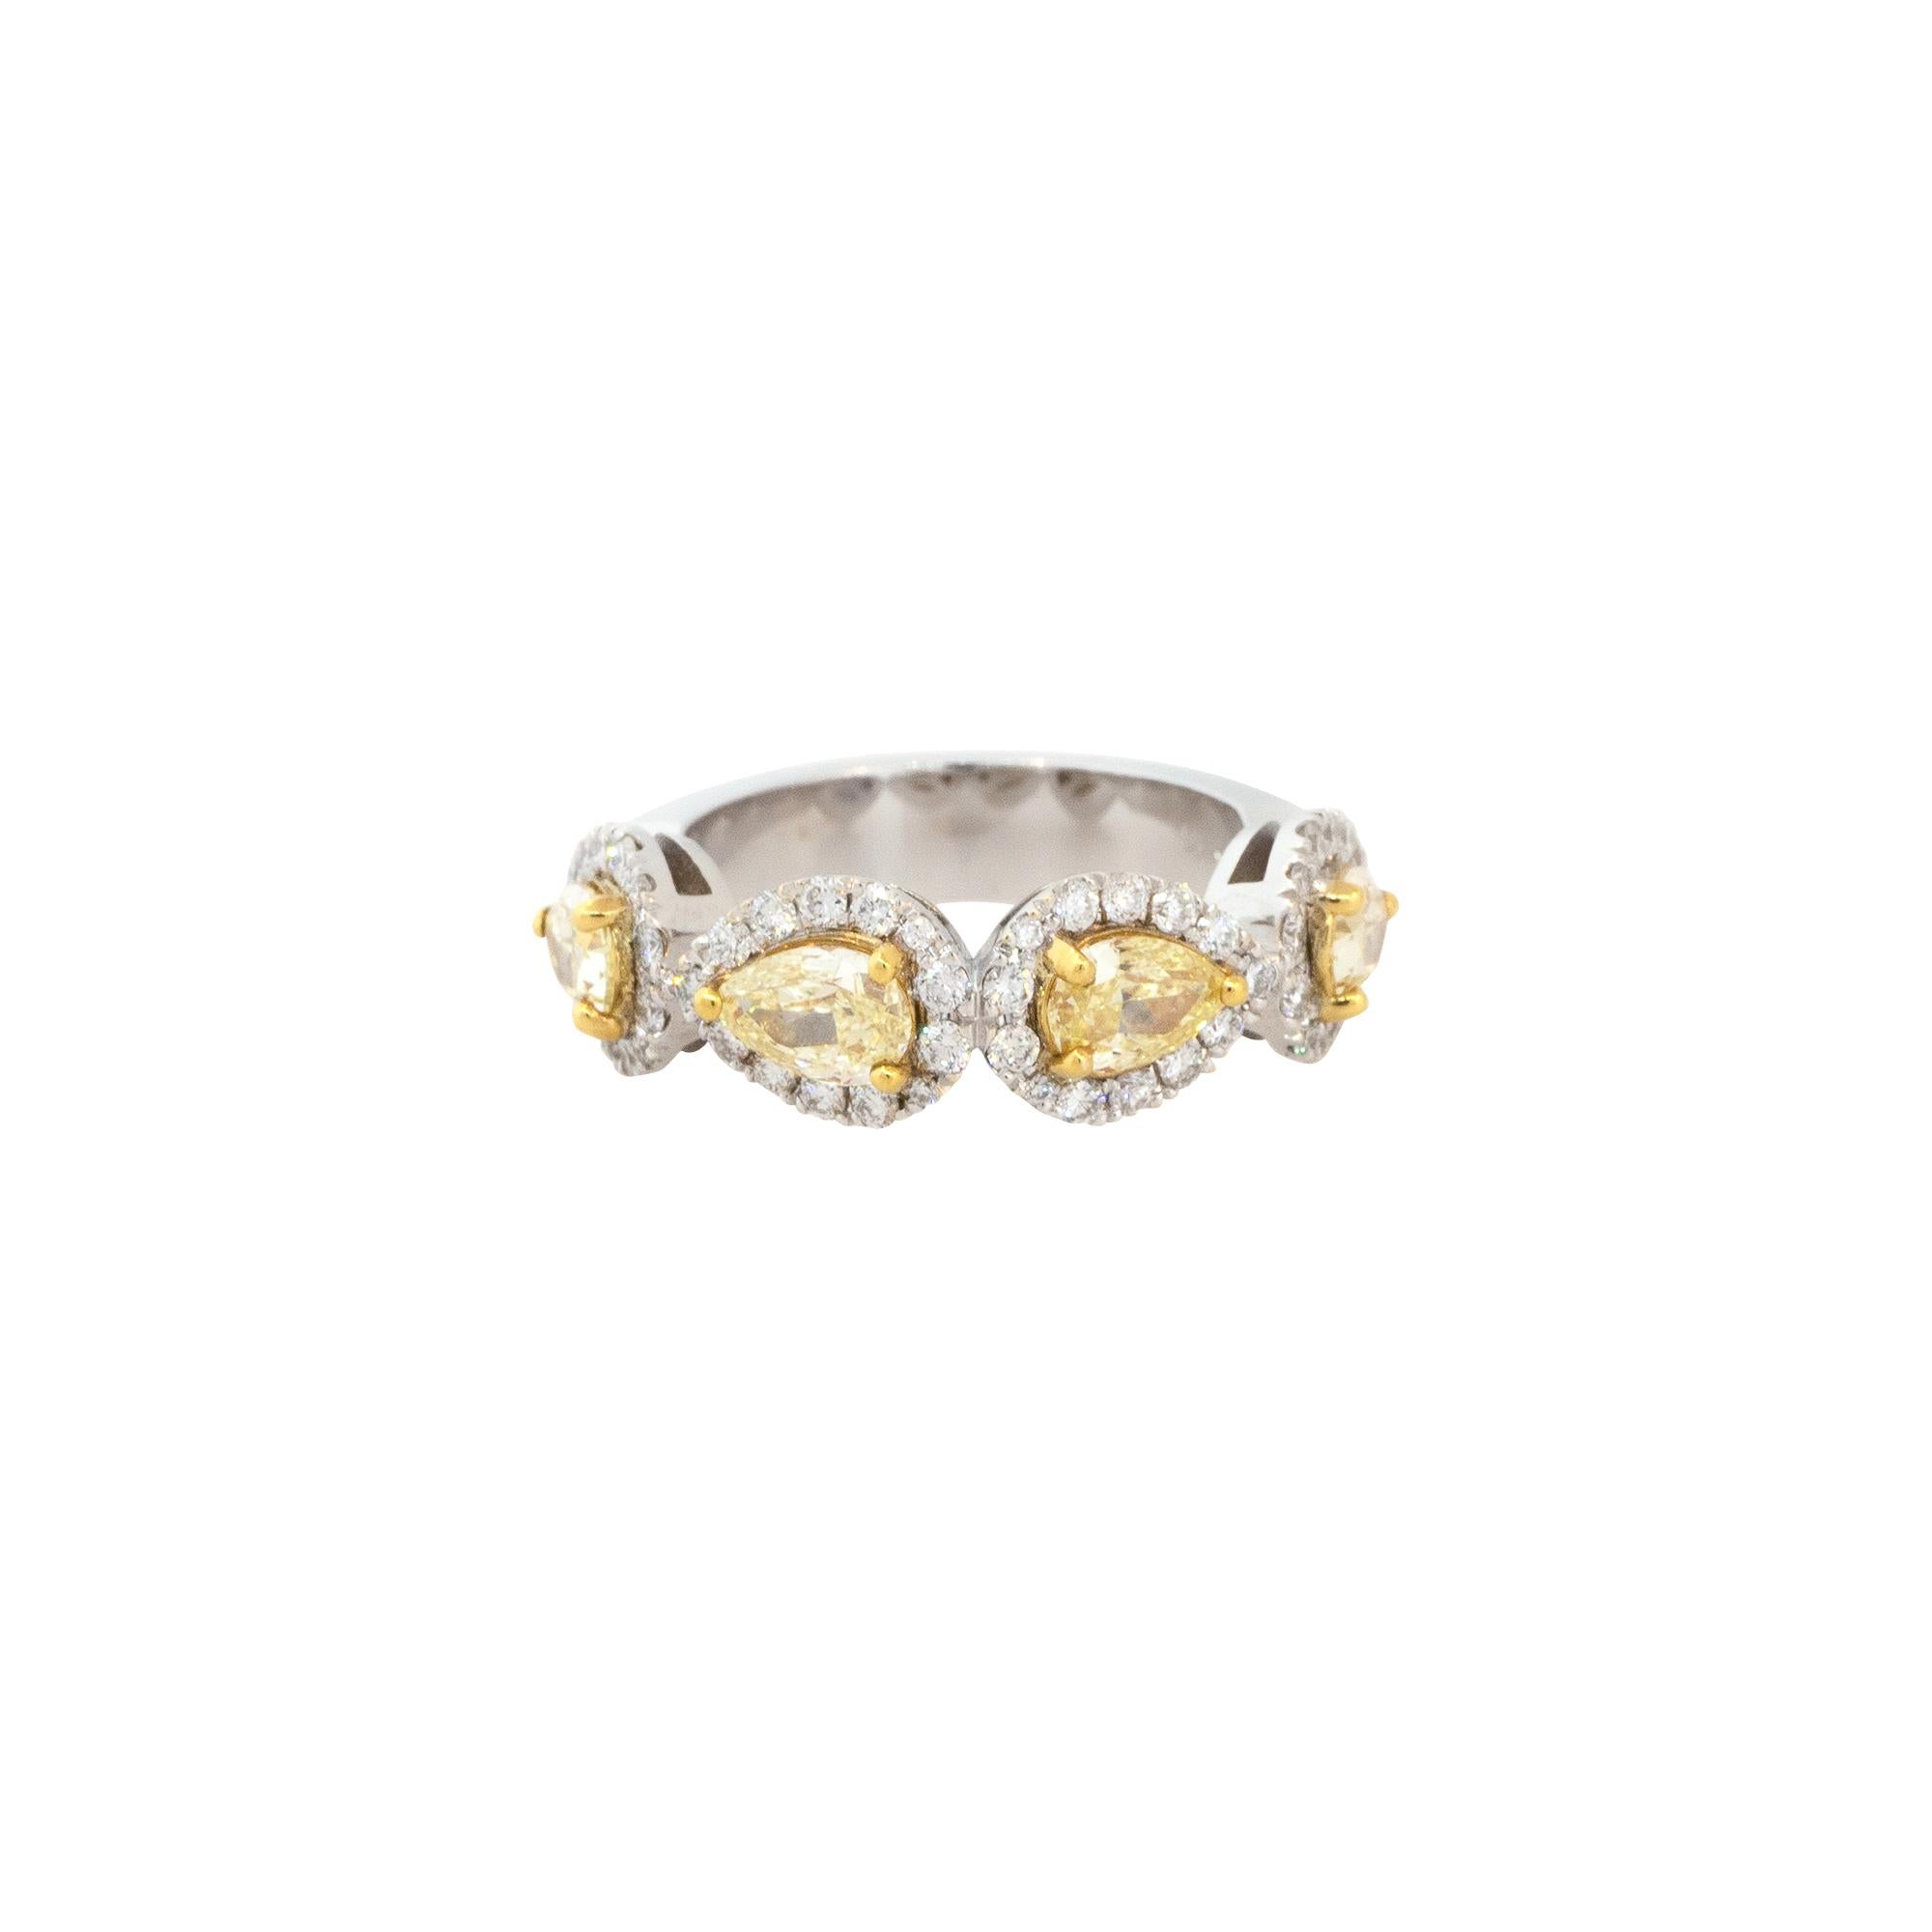 18k Weißgold 2,14ctw Fancy Gelb Birne geformt Halo Diamant Ring

Stil: Damen 4 Stein Diamant Halo Ring
MATERIAL: 18k Weißgold
Diamant-Details: Ungefähr 2,14ctw birnenförmige und runde Brillanten. Es gibt insgesamt 4 Fancy Yellow Pear Shaped